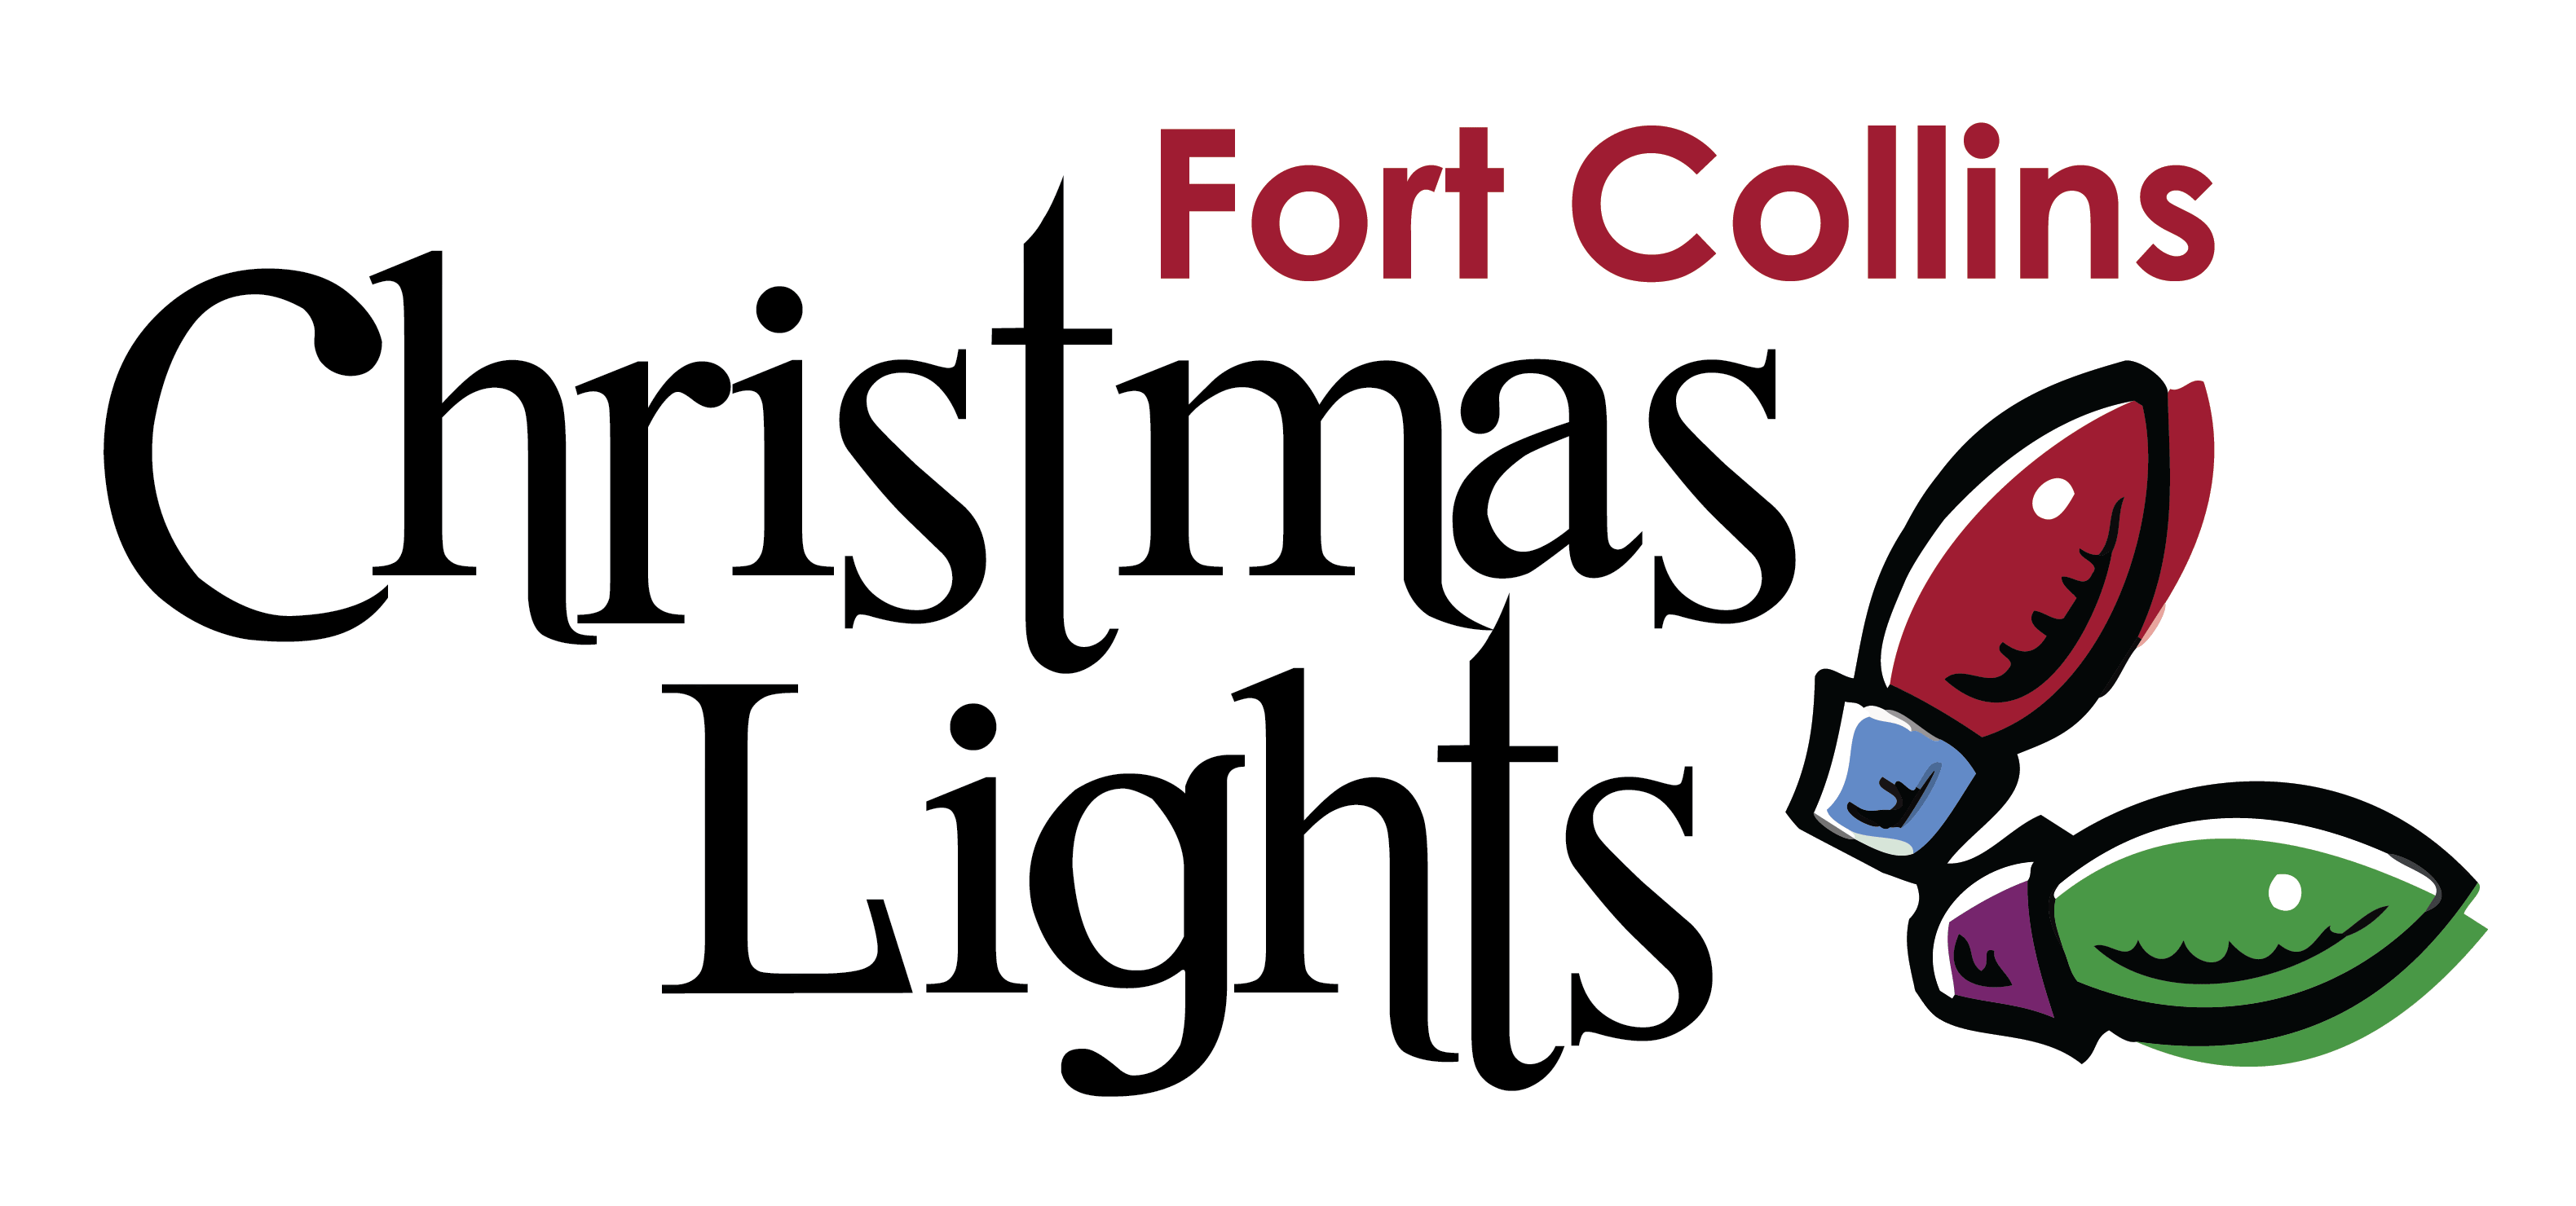 Christmas Lights Logo - Fort Collins Christmas Lights | Christmas Light Experts. Installing ...